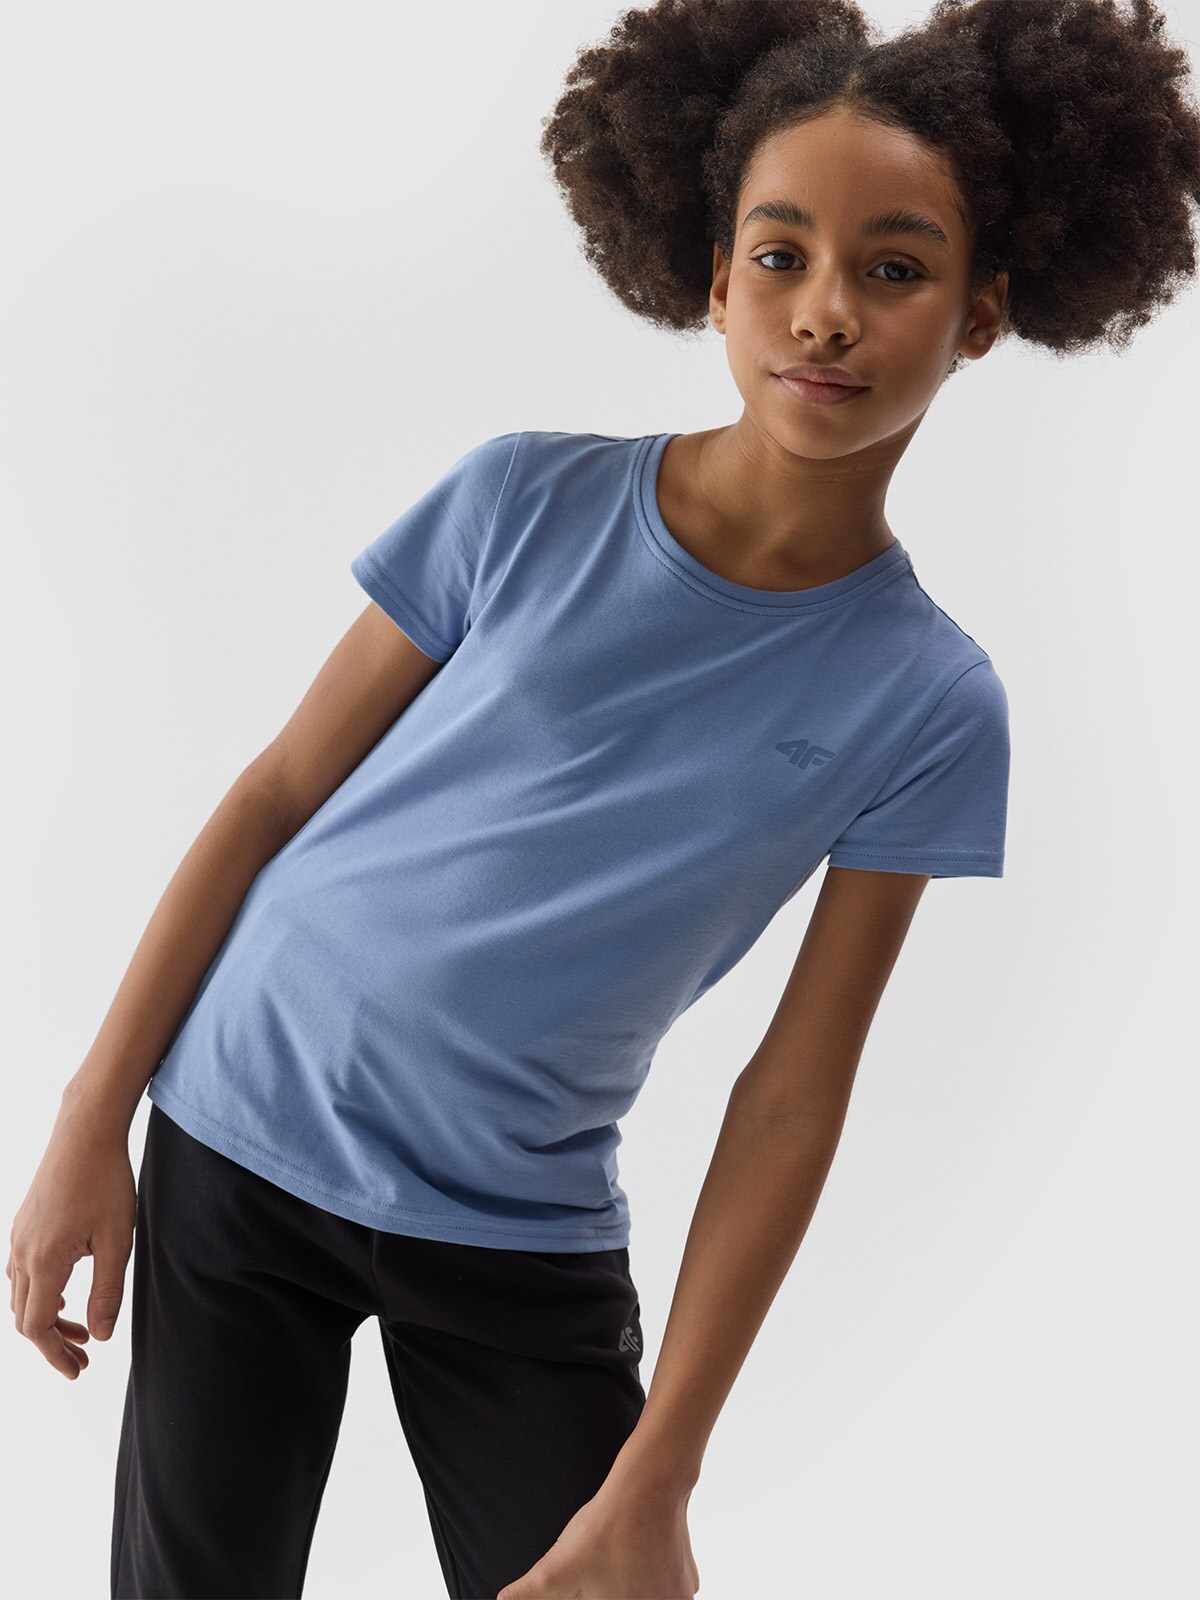 Dievčenské tričko bez potlače - tmavomodré